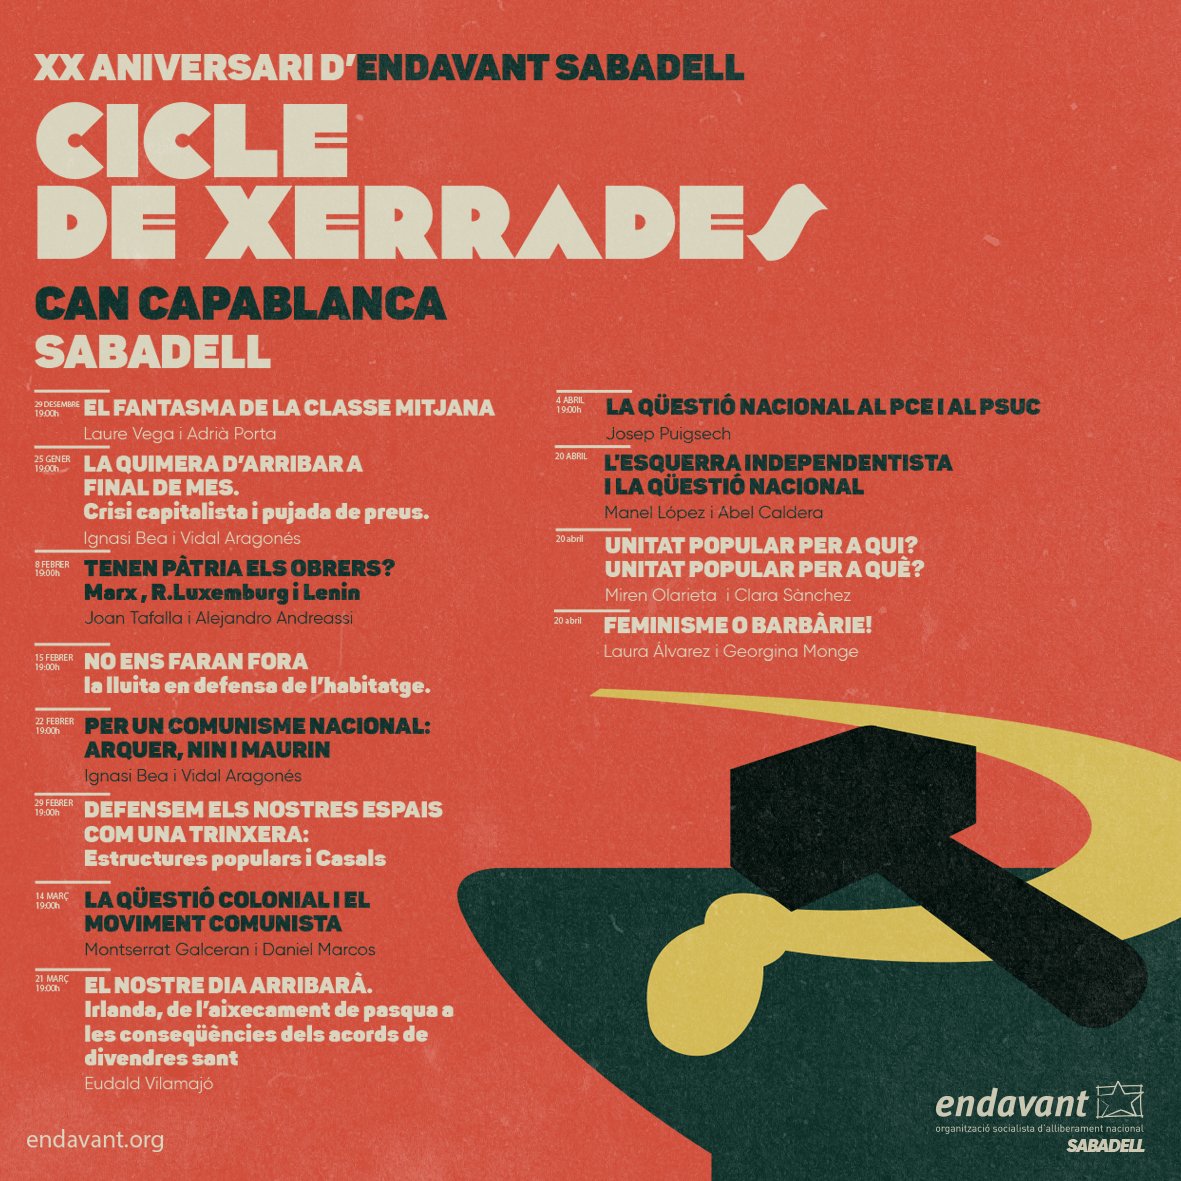 🔴 XXè aniversari d'@Endavant_Valles🔴 Enguany celebrem 20 anys d'Endavant a #Sabadell . Després de fer-ne la presentació, us presentem el programa de xerrades amb el que ho celebrarem, tot incloent un curs específic sobre marxisme i qüestió nacional. 📓🖊 Prepareu agendes👇